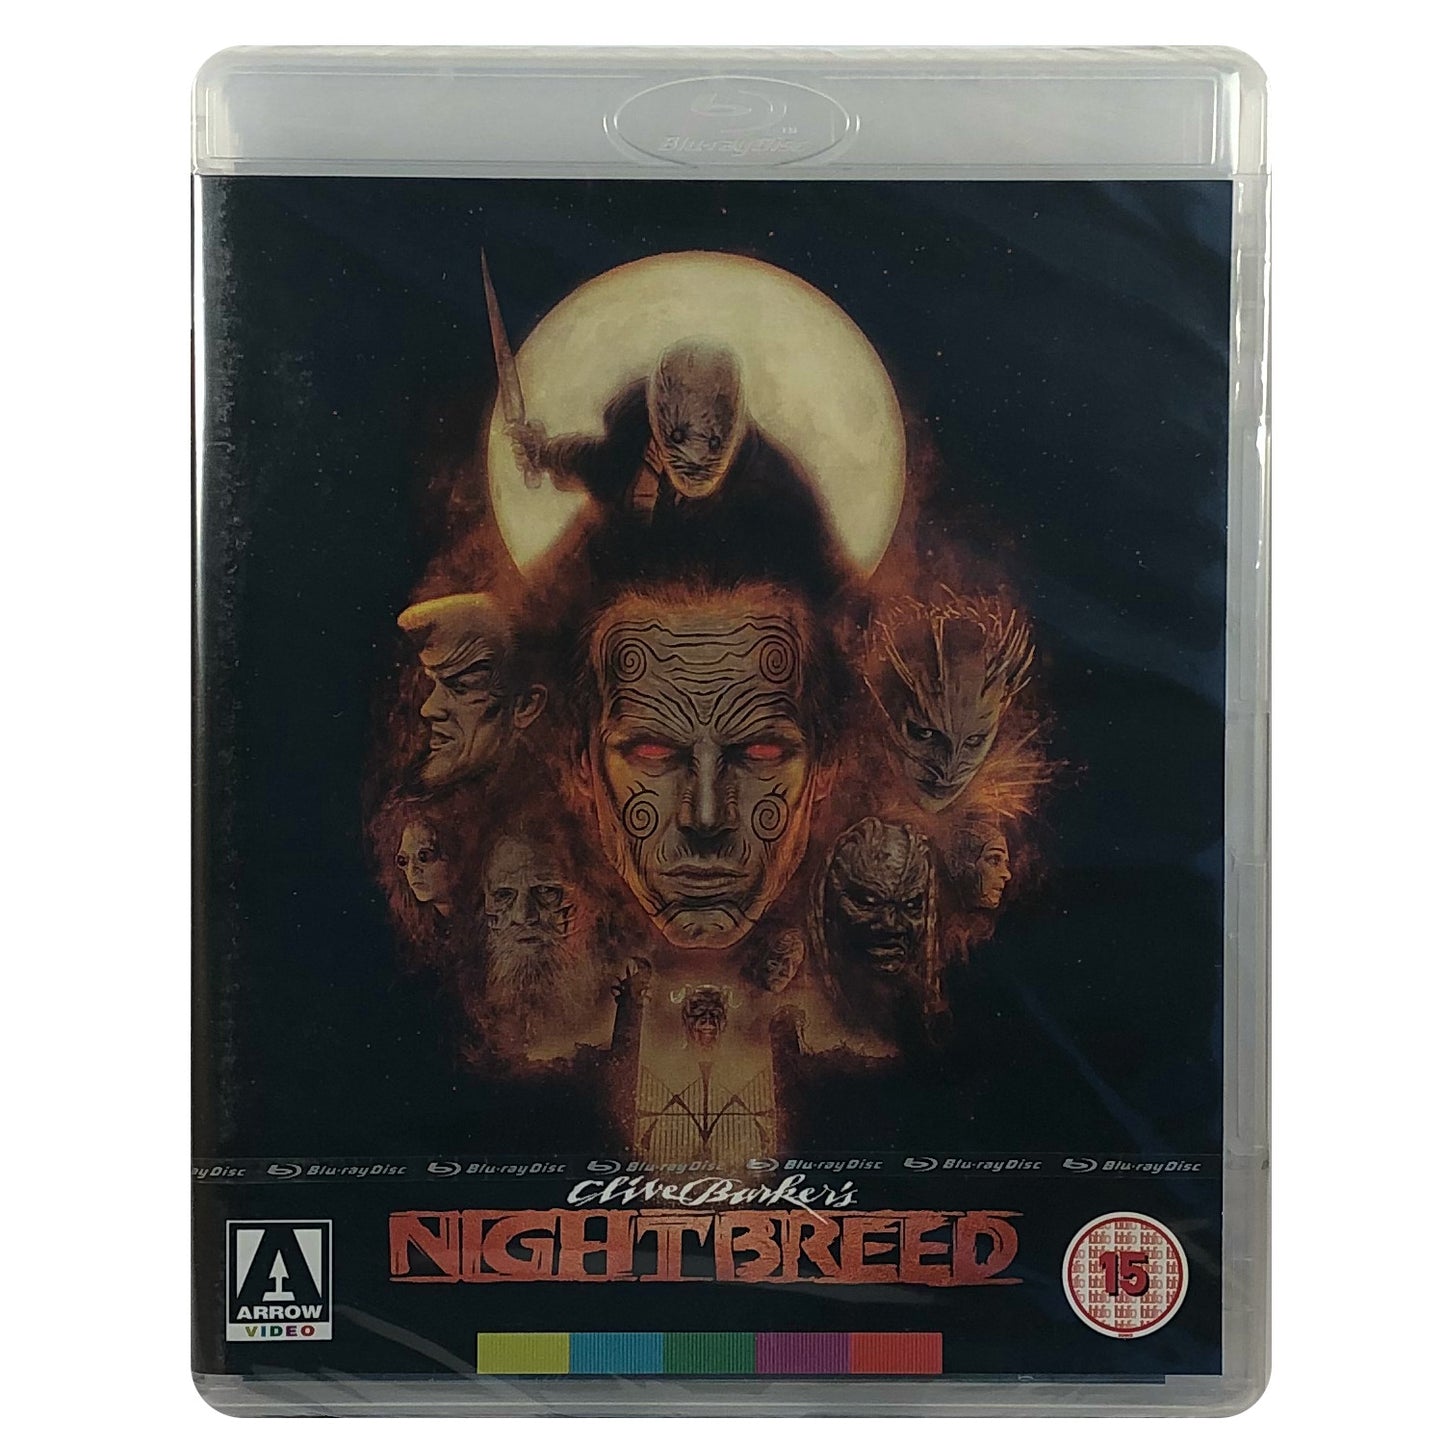 Nightbreed Blu-Ray